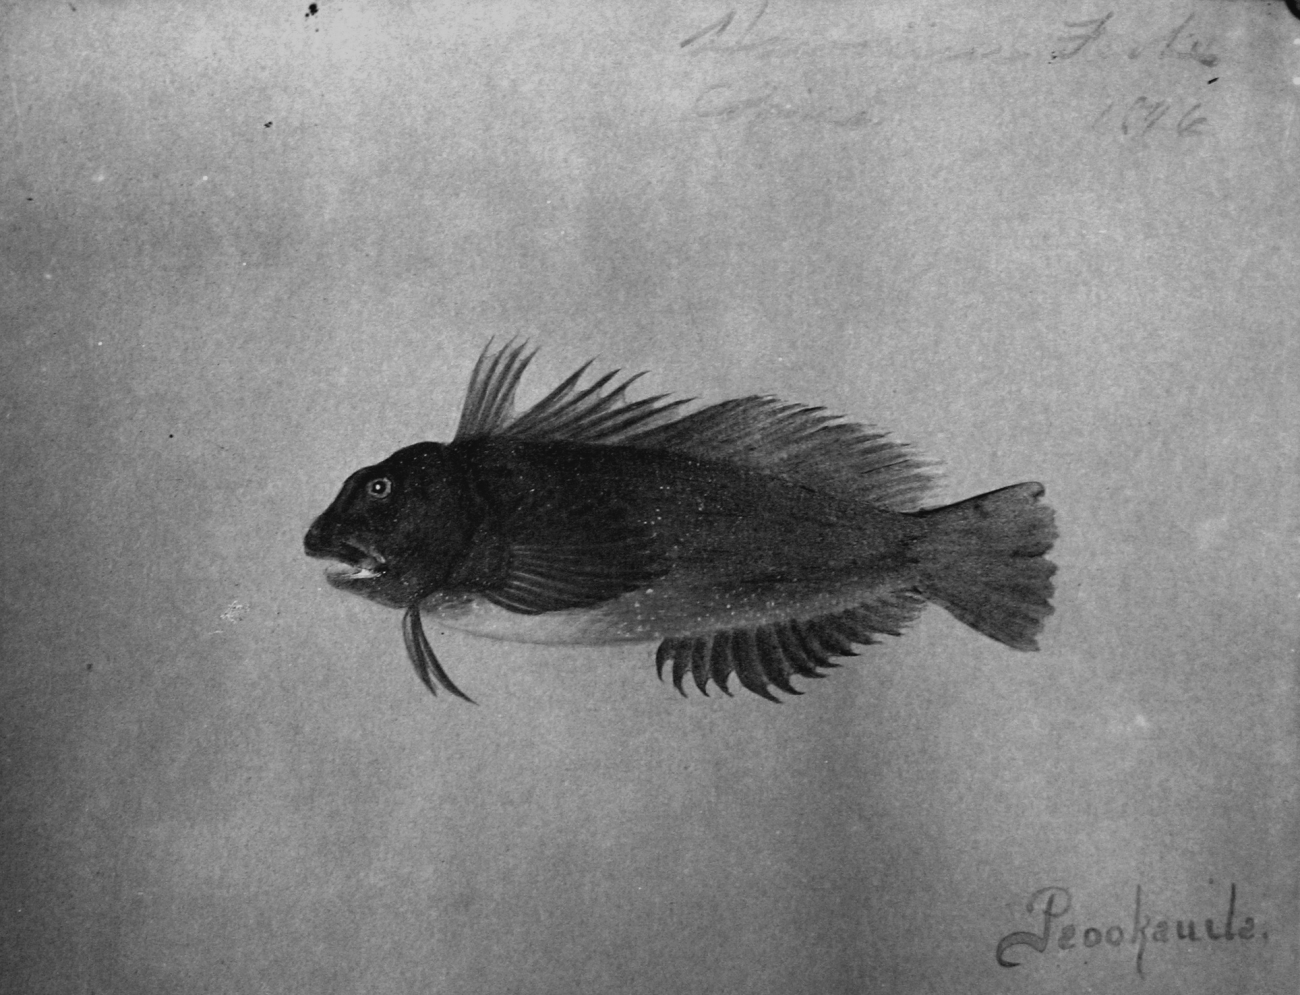 Hawaiian fishes, 1896, Peookauila